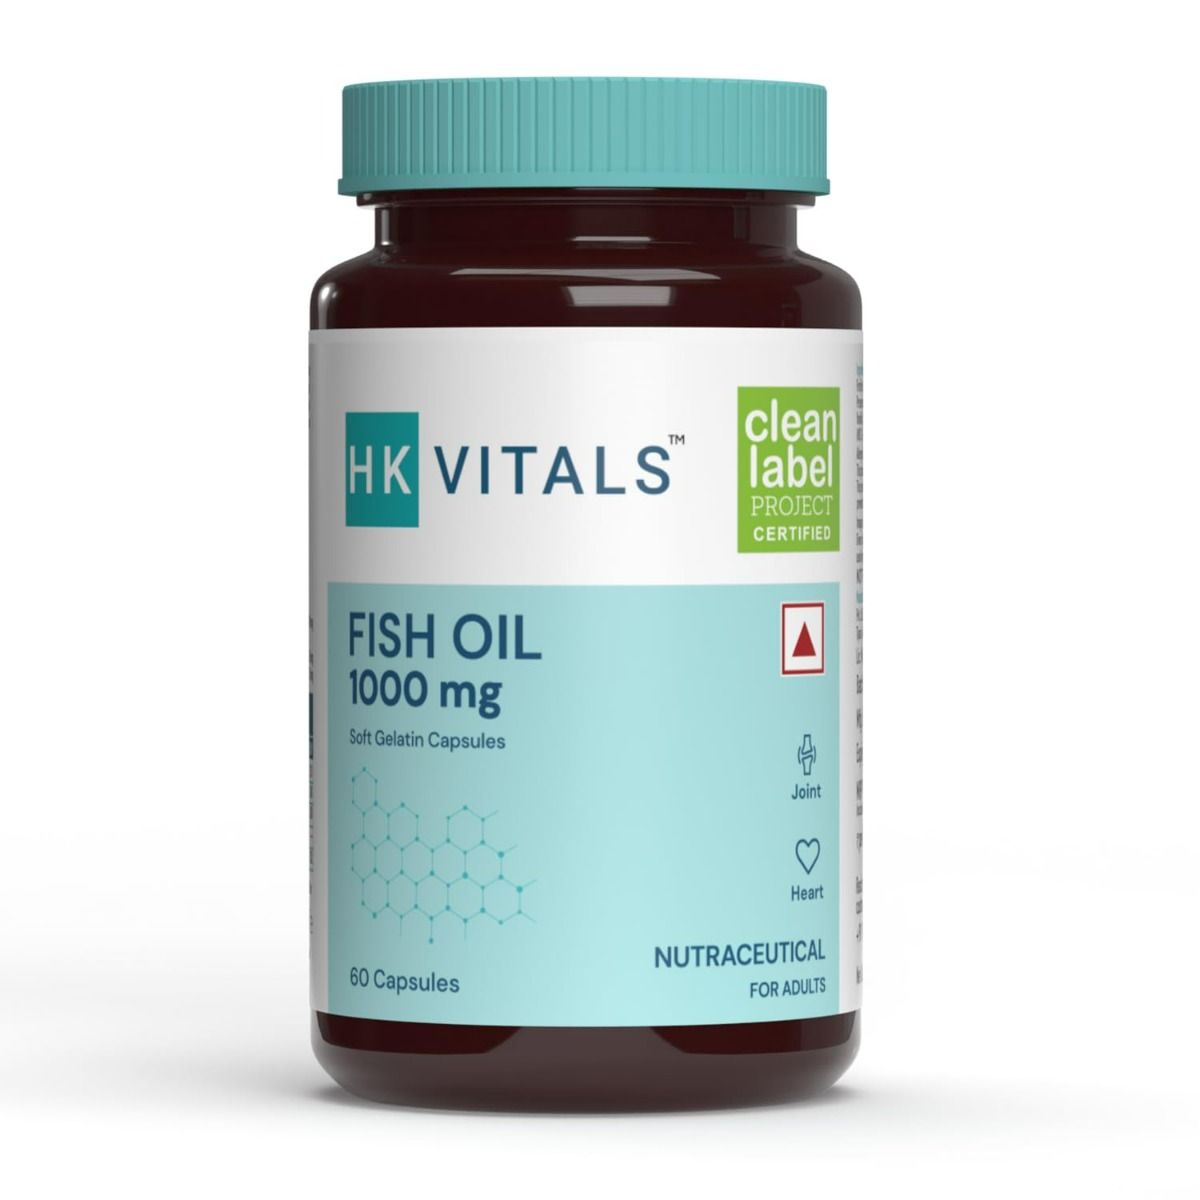 Buy HealthKart HK Vitals Fish Oil 1000 mg, 60 Capsules Online